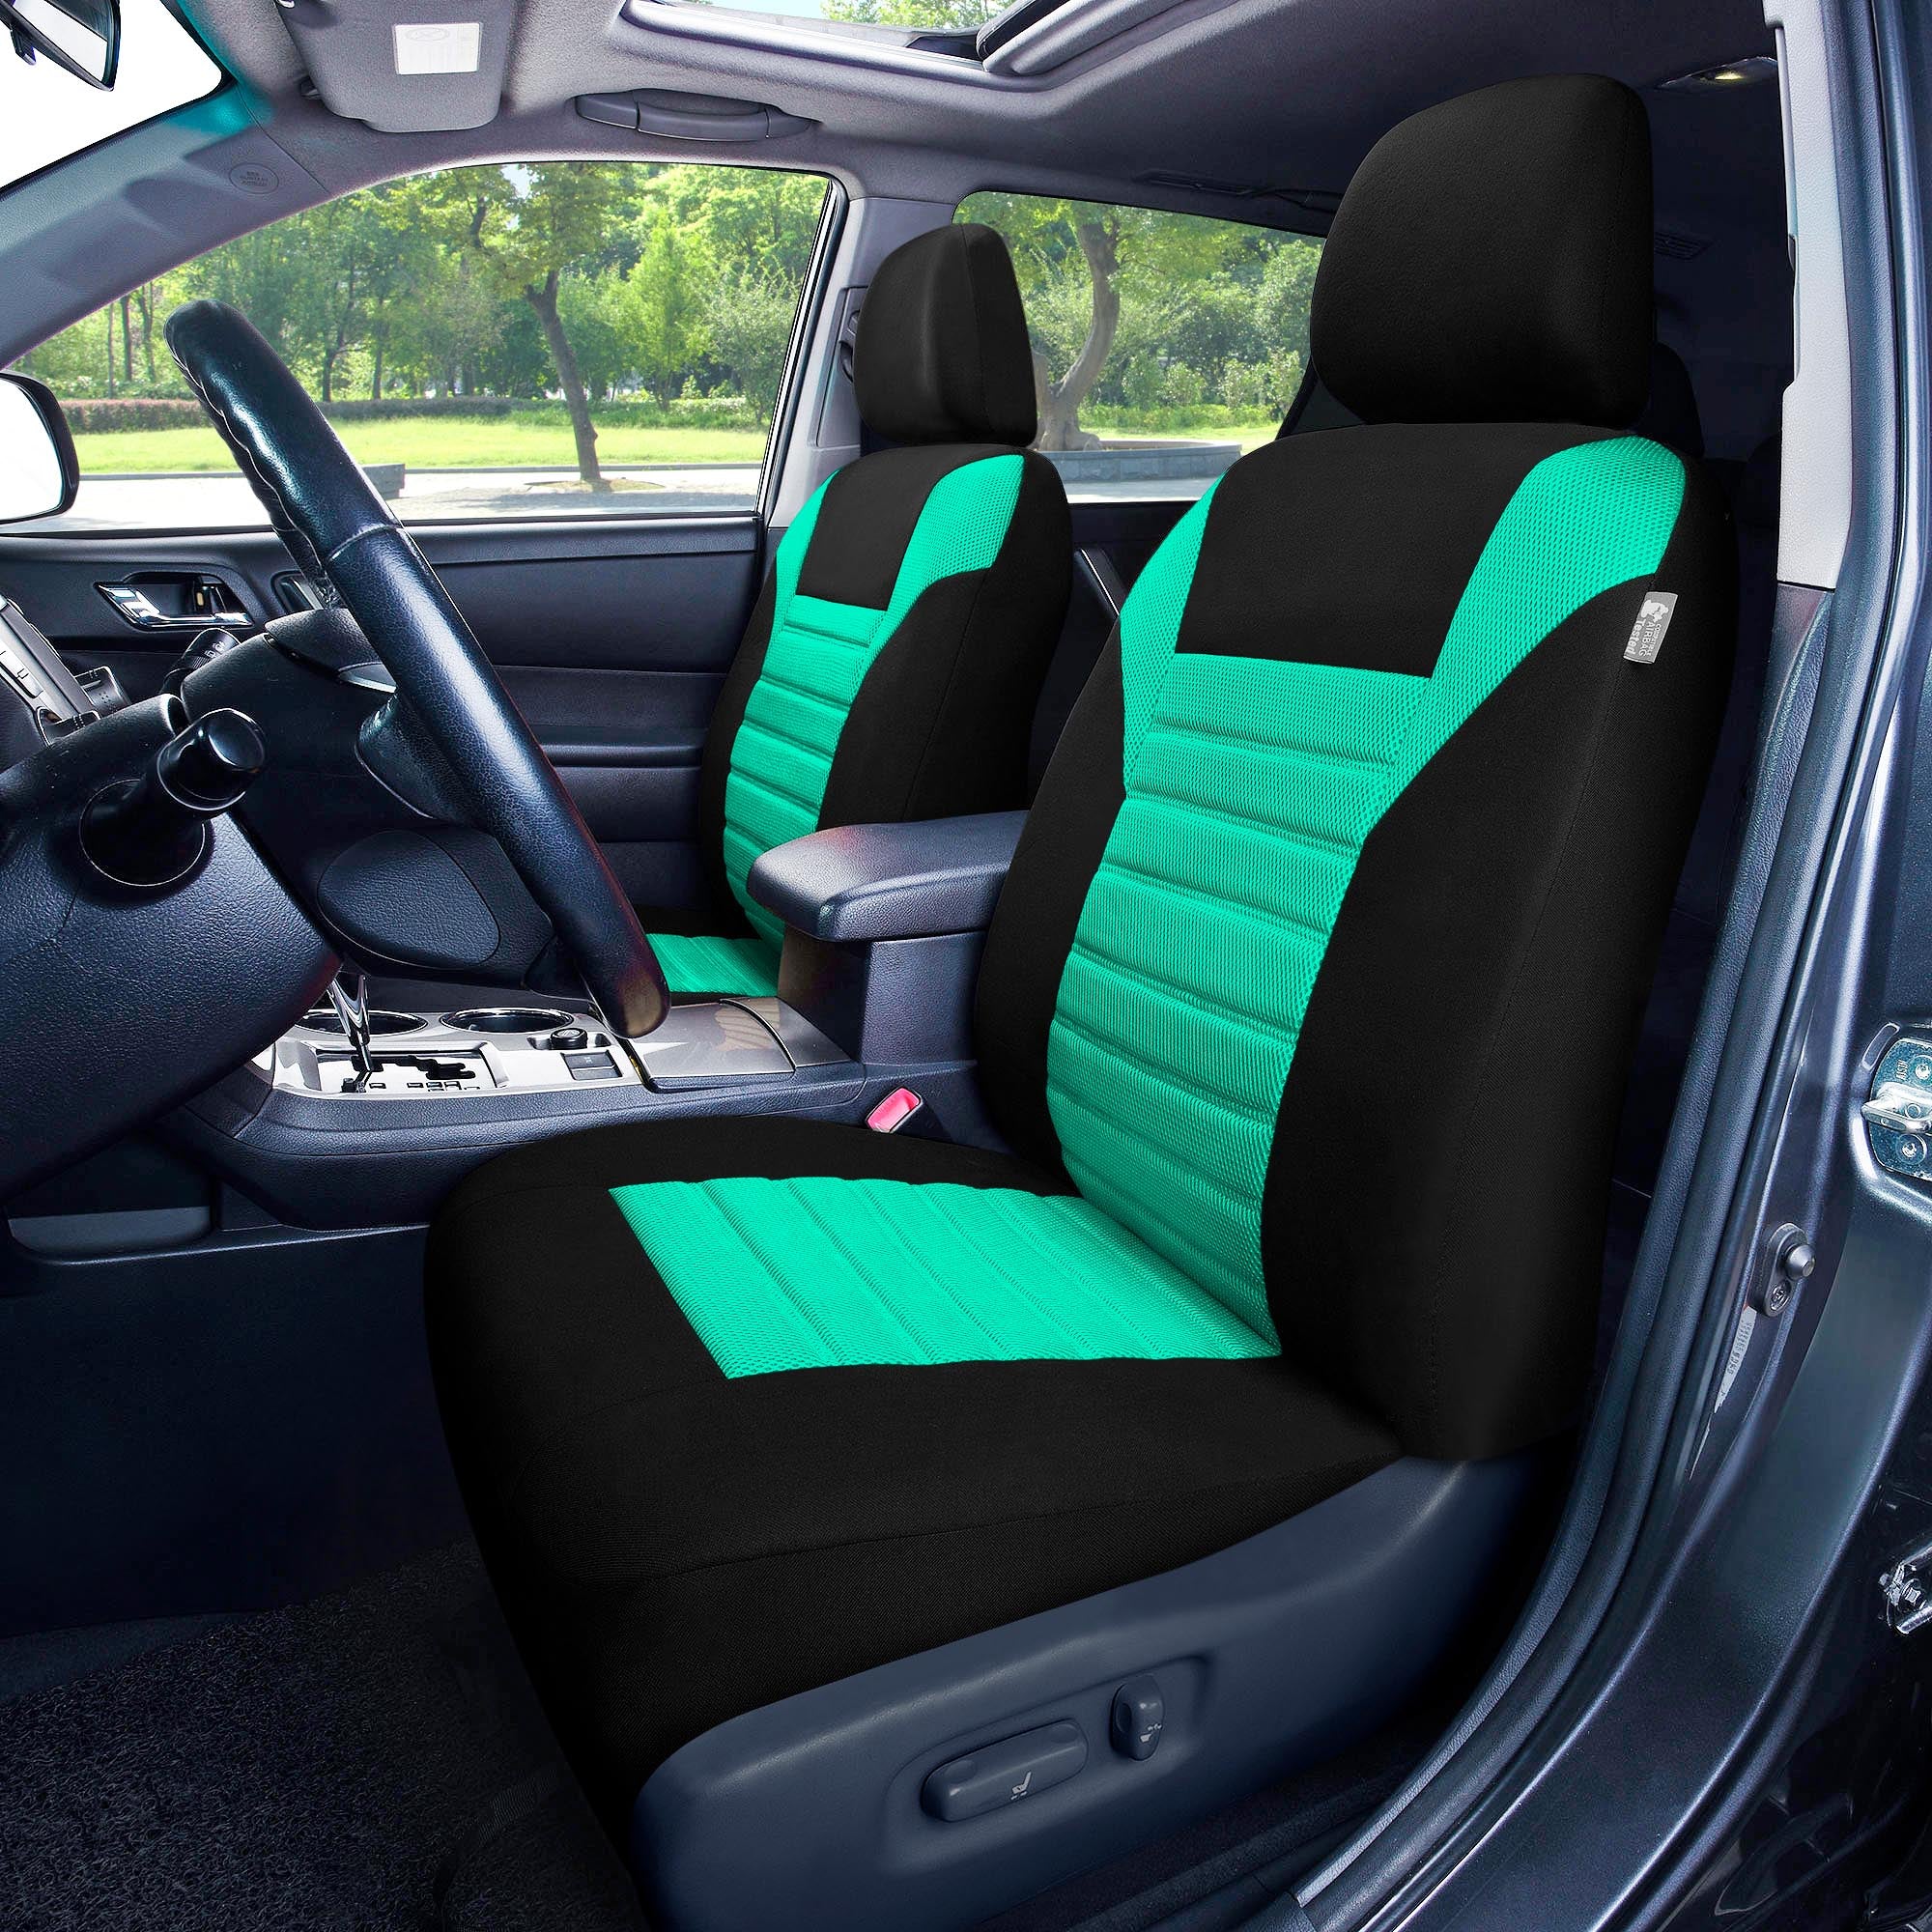 Premium 3D Air Mesh Seat Covers - Full Set Mint